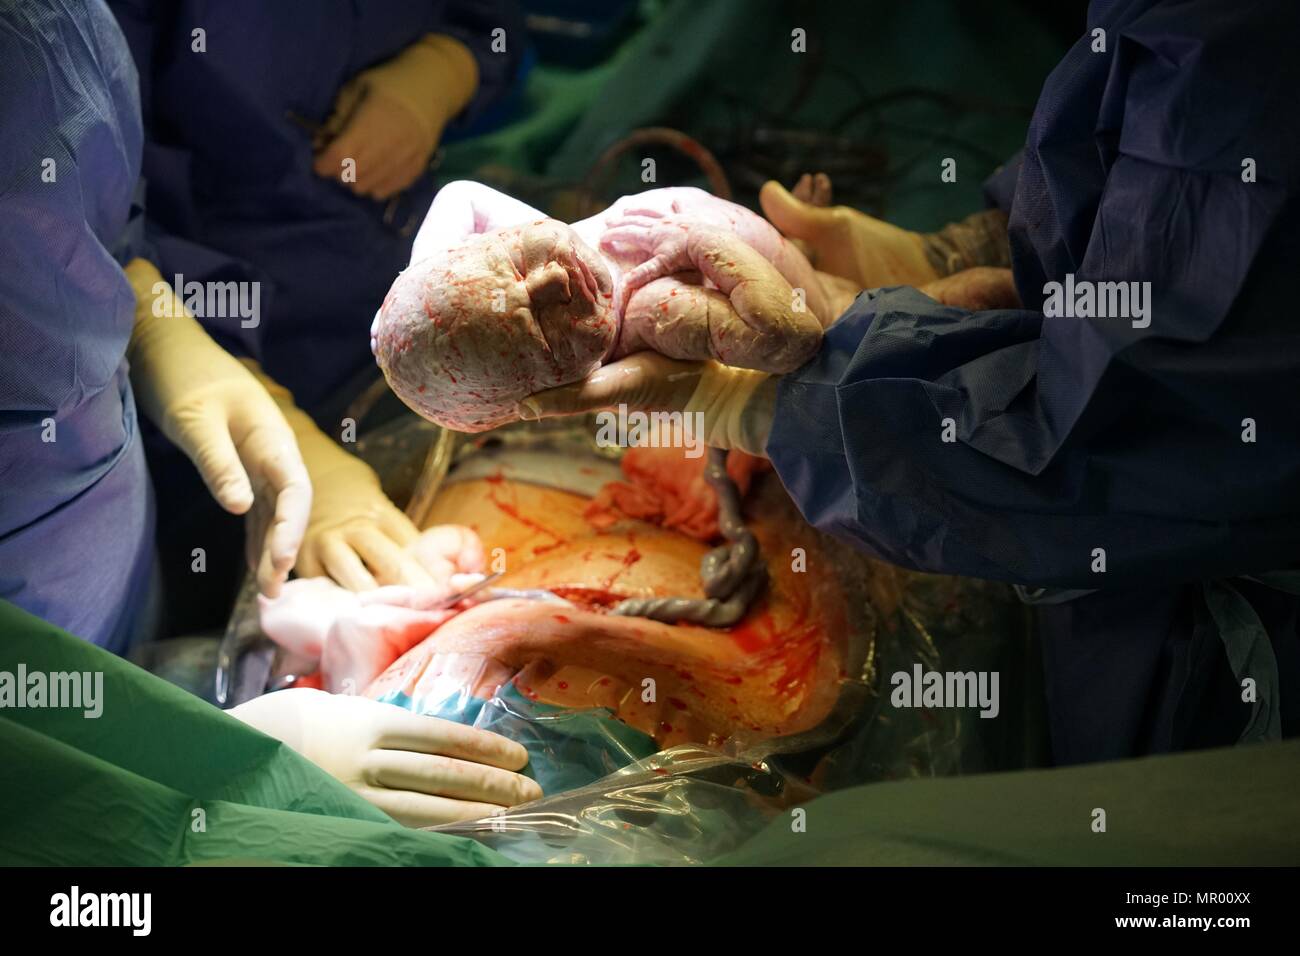 Bébé soit né par césarienne à l'hôpital, couvert de vernix, cordon ombilical encore attaché et mère plaie chirurgicale en arrière-plan Banque D'Images